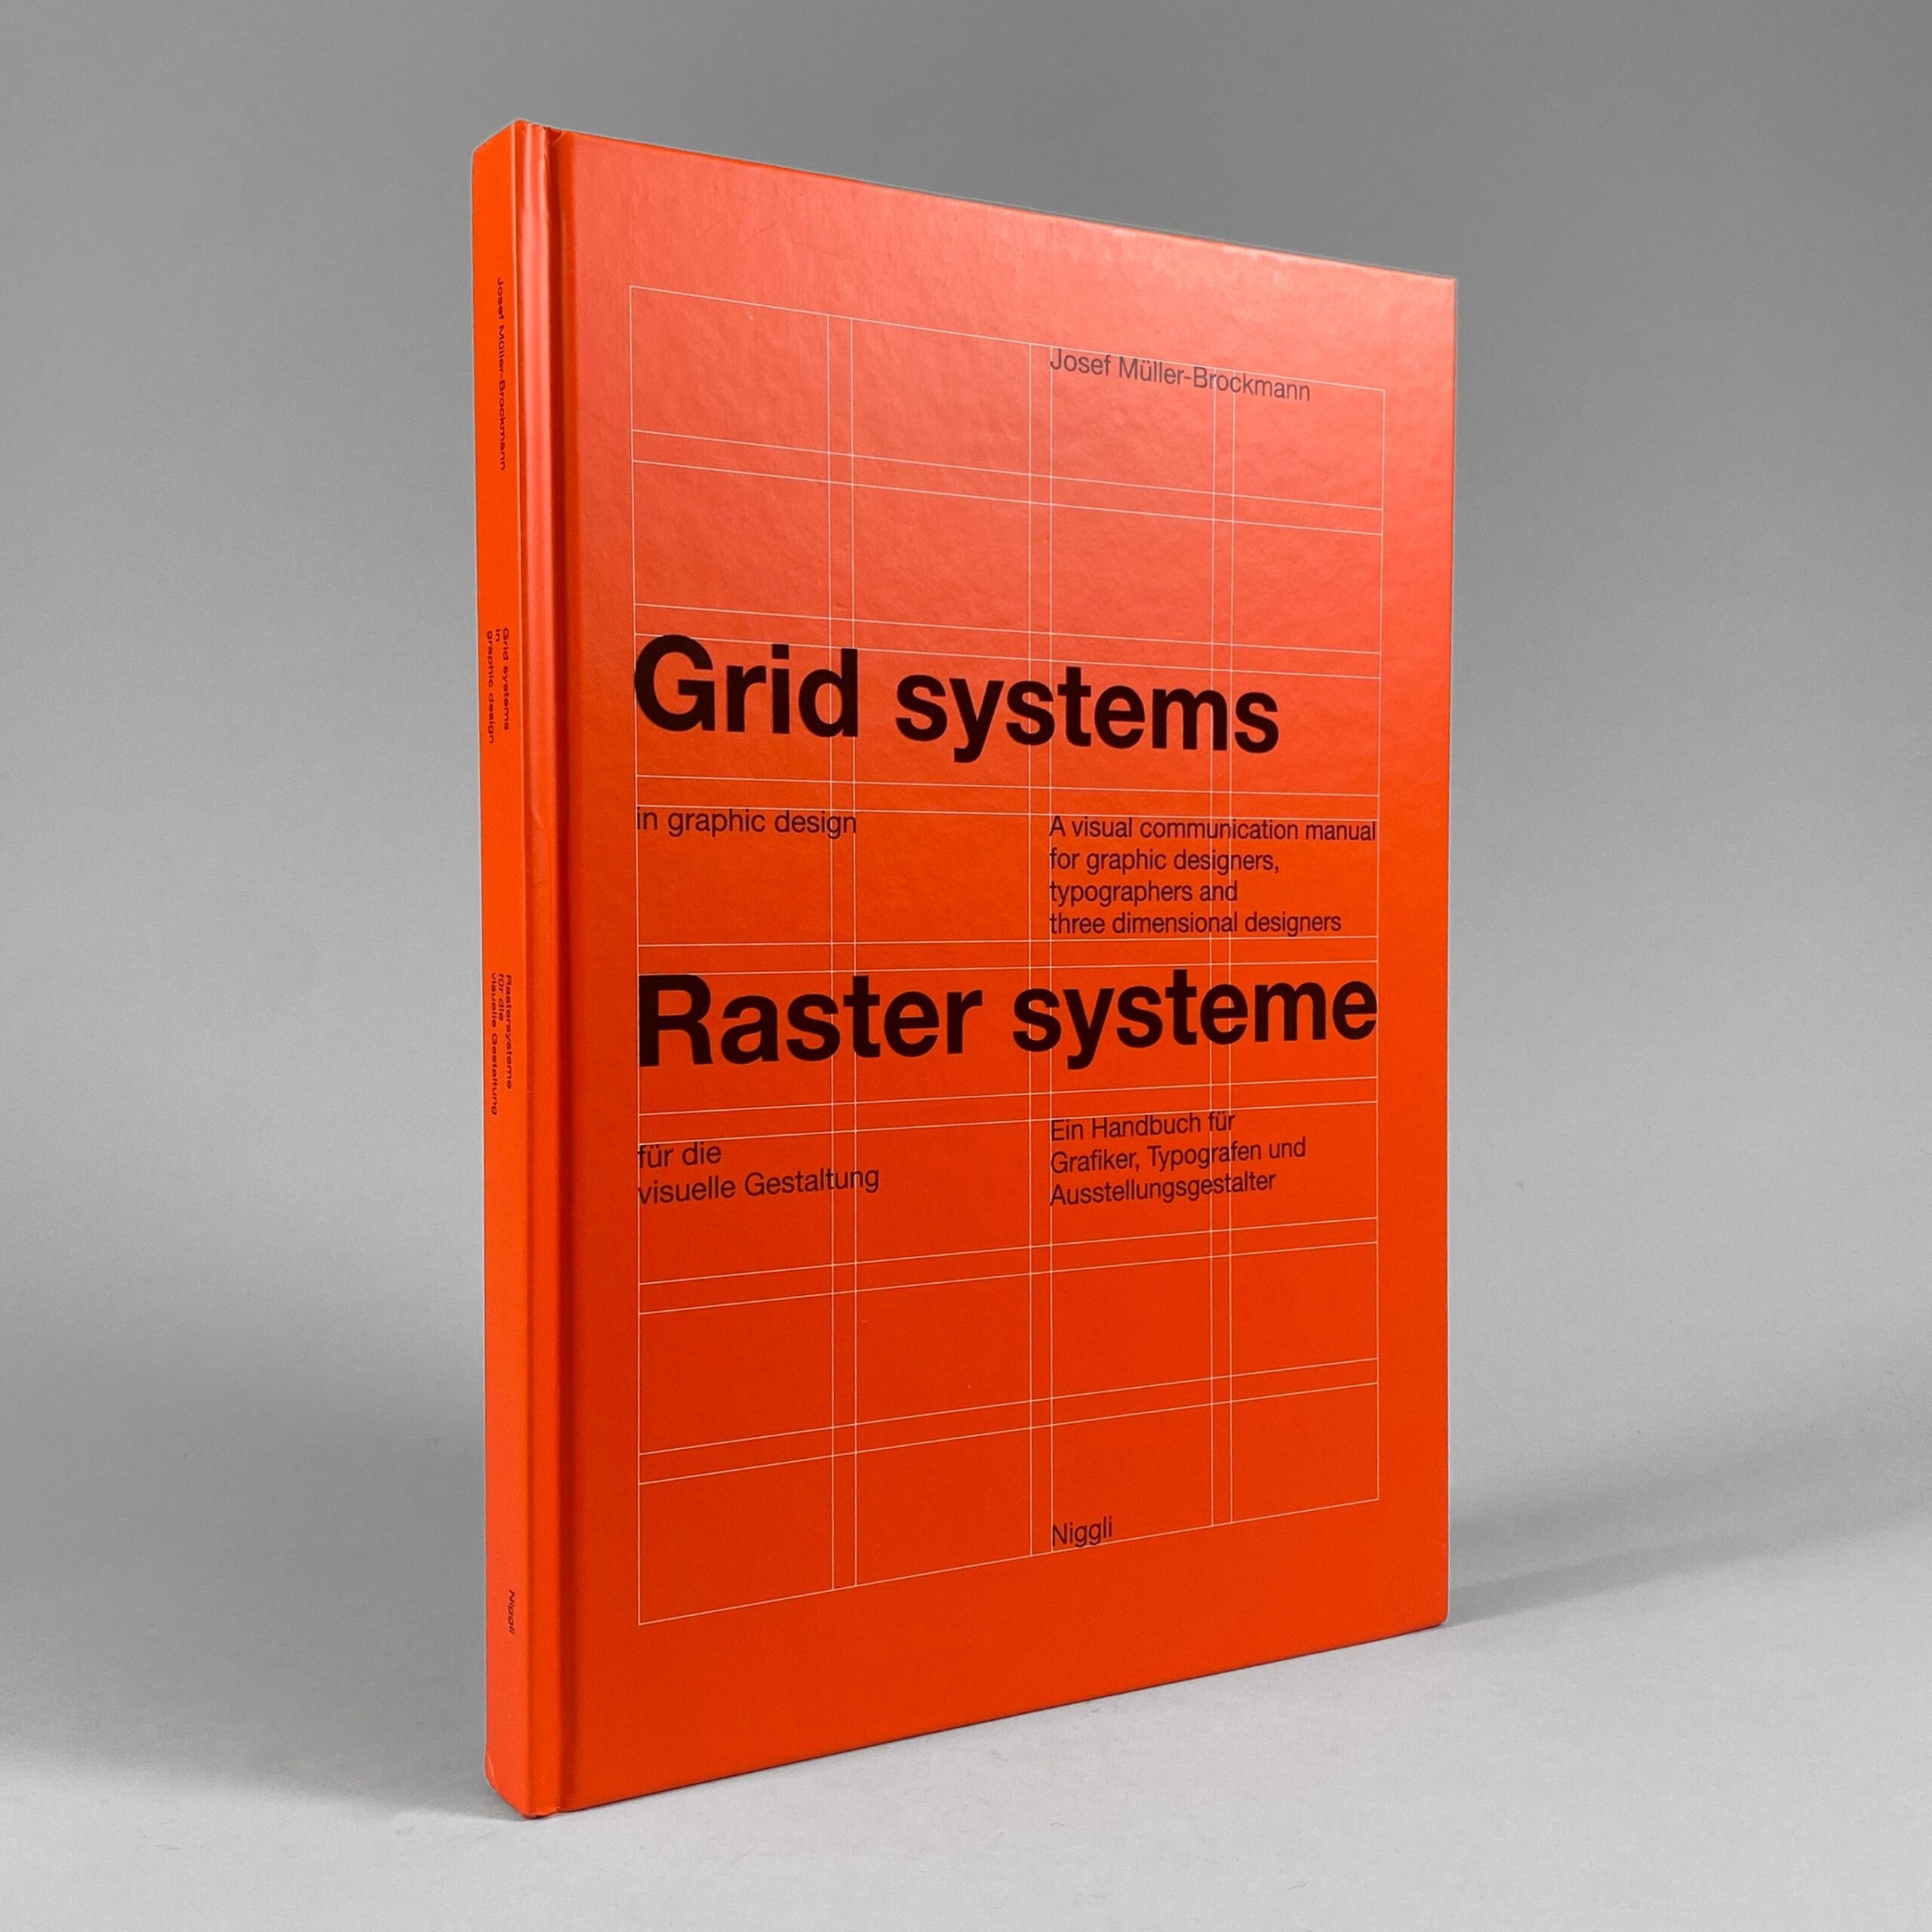 grid systems in graphic design Niche Utama Home Grid Systems in Graphic Design / Josef Müller-Brockmann